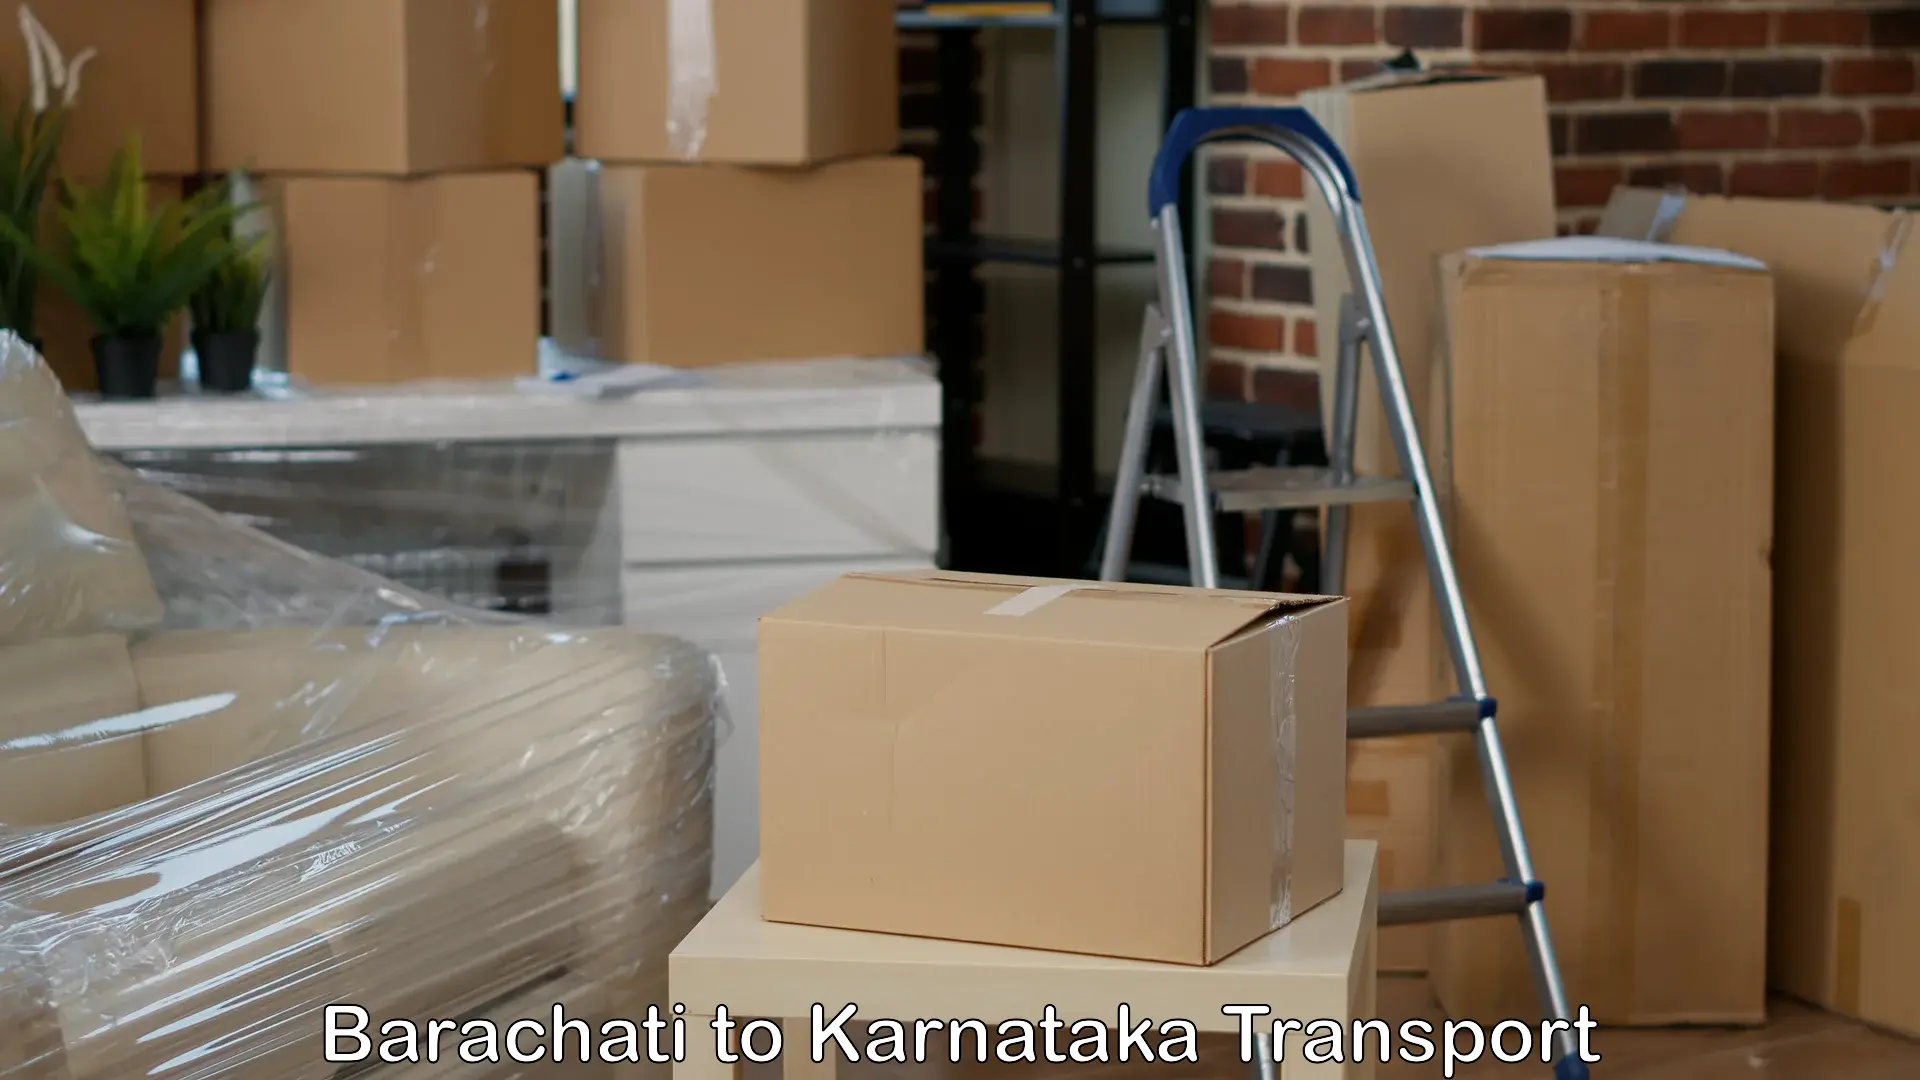 Furniture transport service Barachati to Gauribidanur